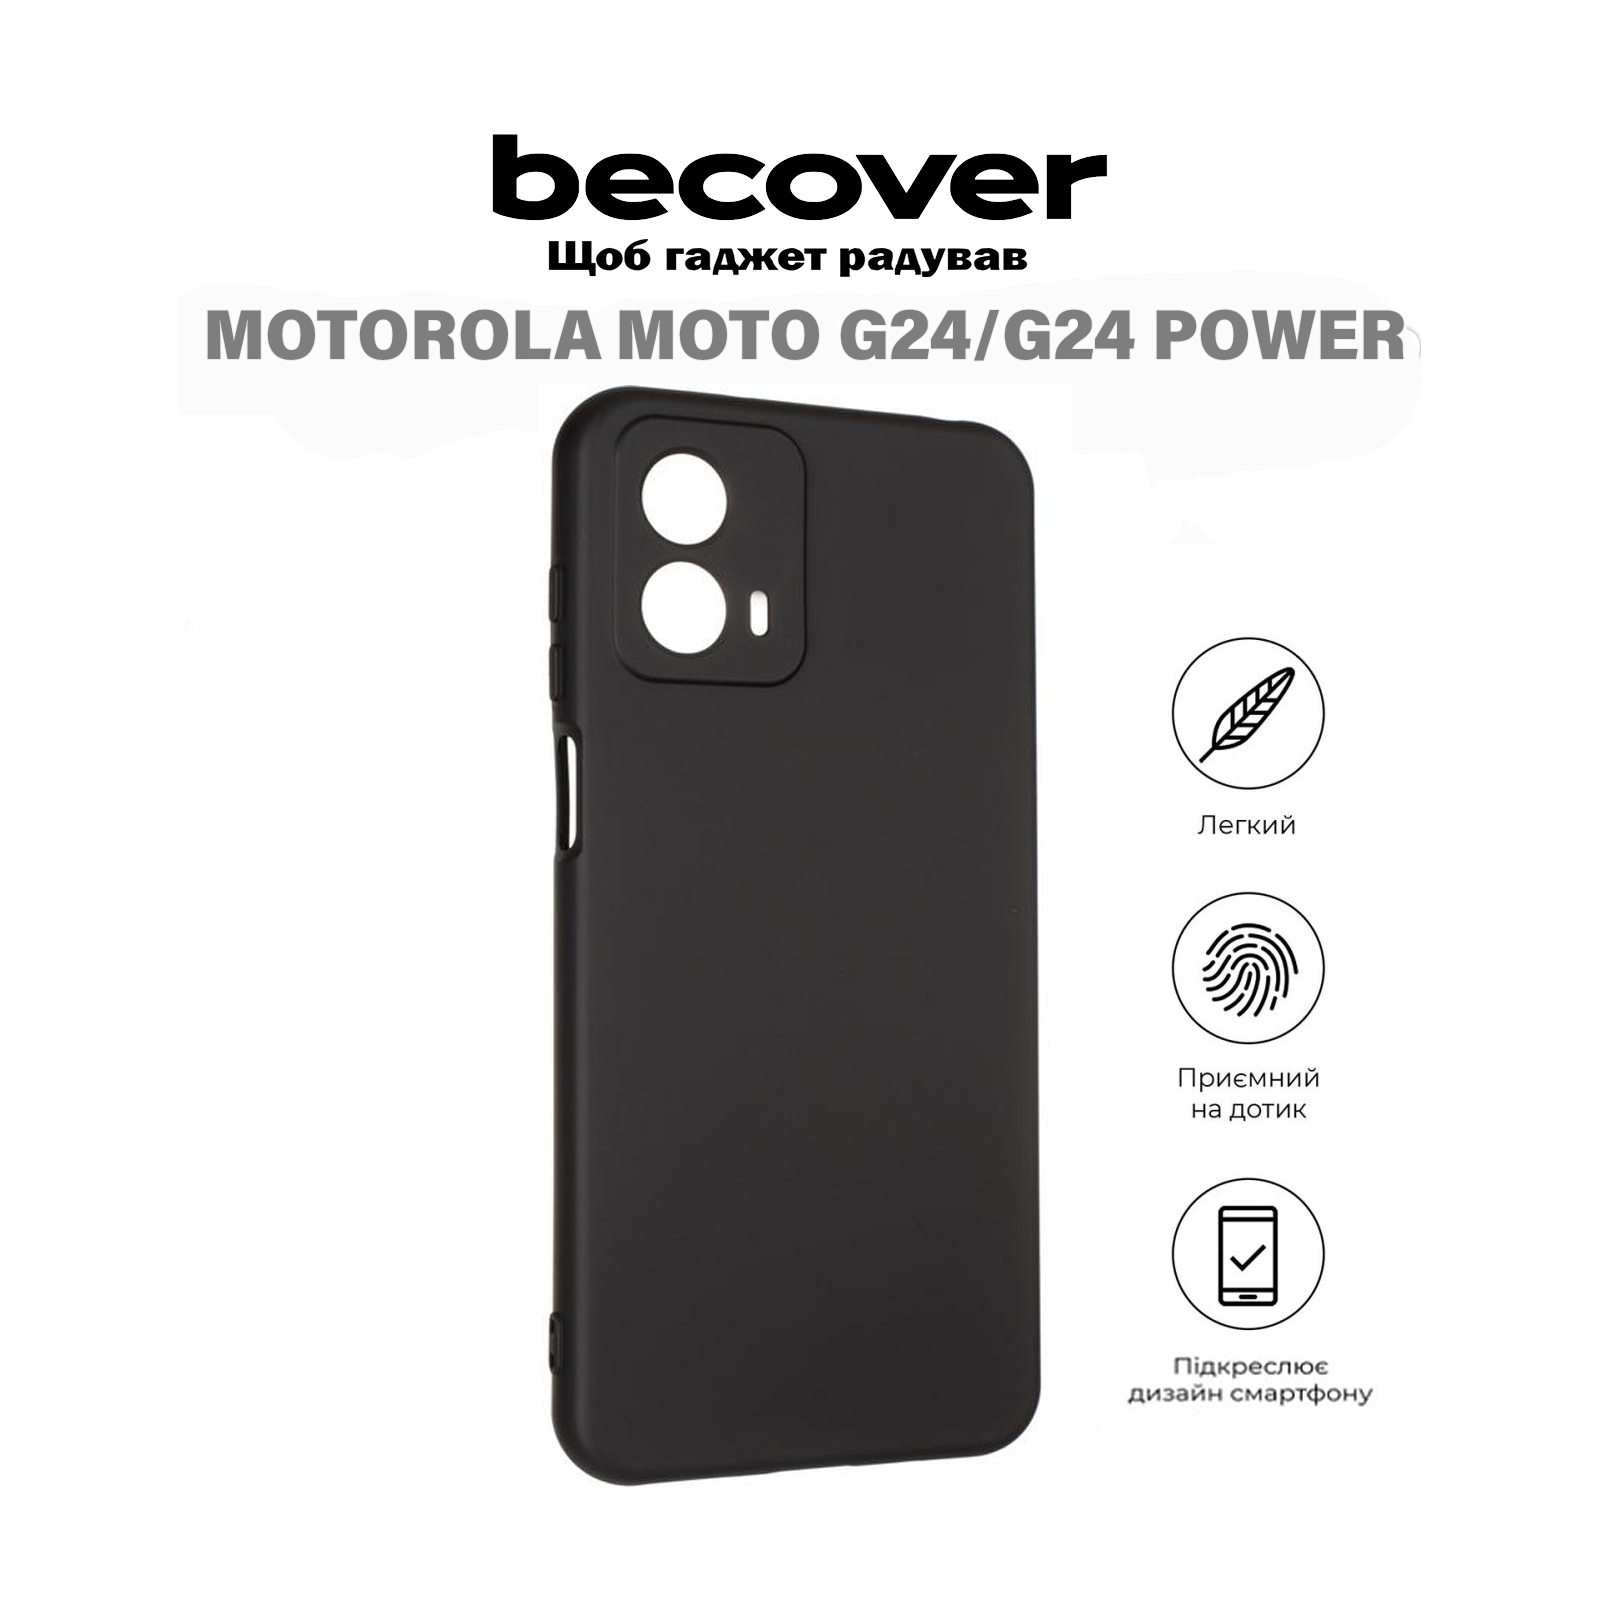 Чехол для мобильного телефона BeCover Motorola Moto G24/G24 Power Black (710718) изображение 5